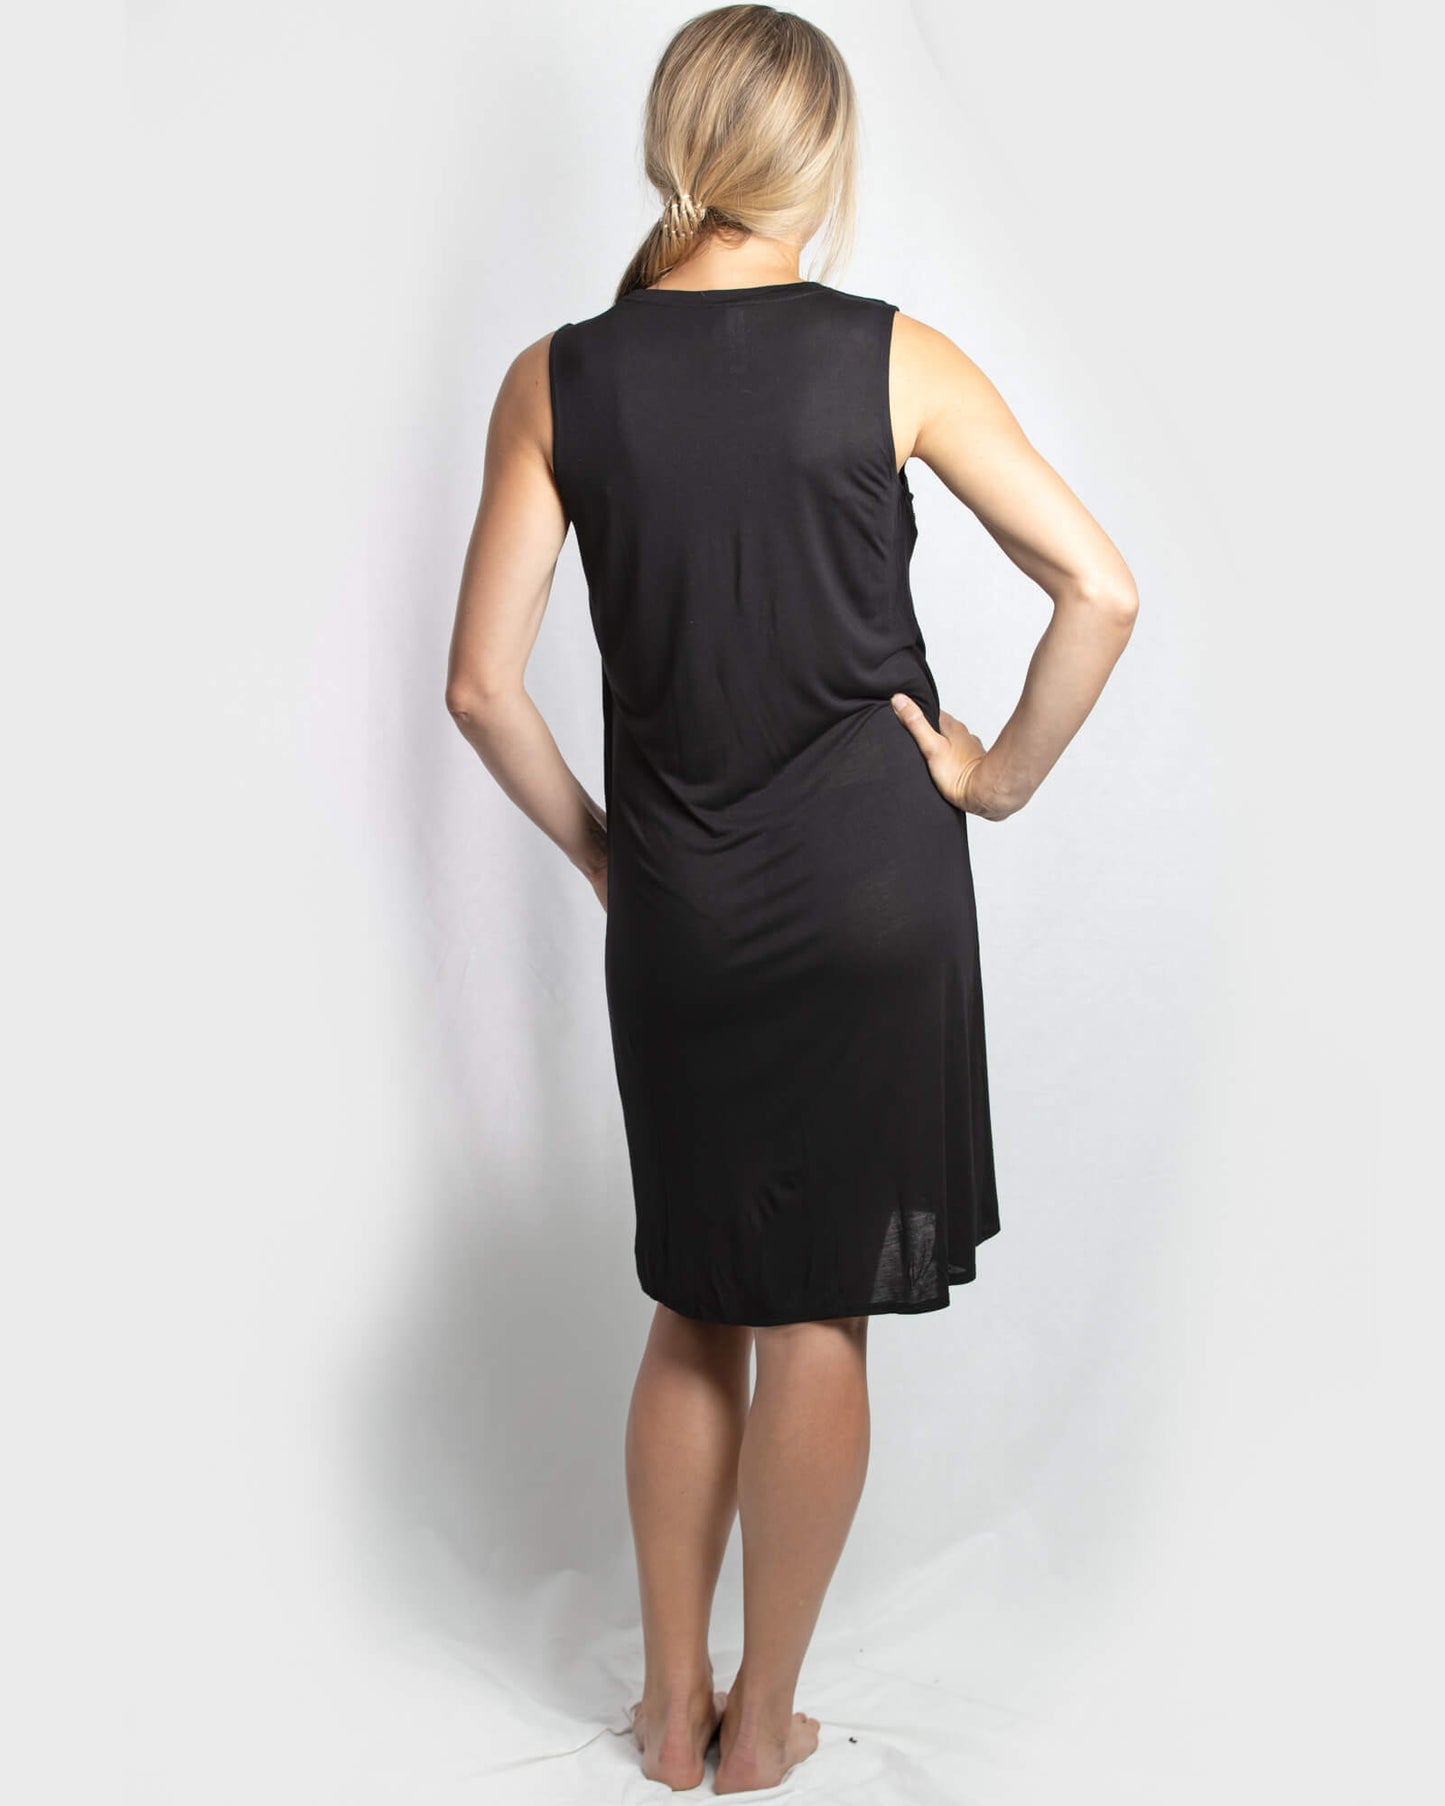 SALE Jessica Cross Over dress - Black